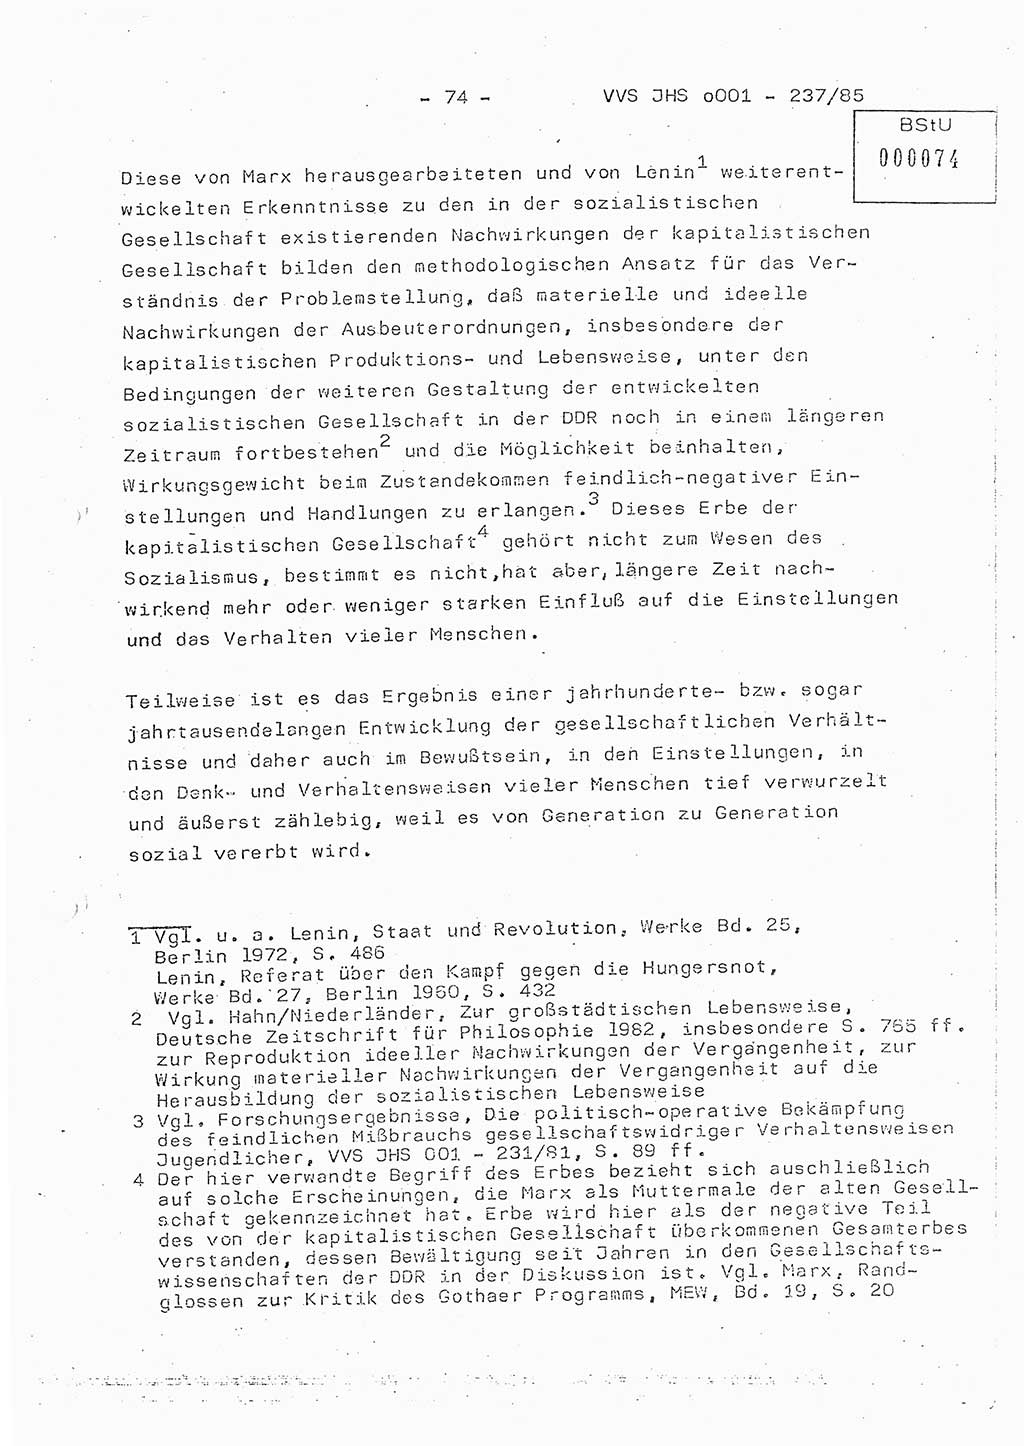 Dissertation Oberstleutnant Peter Jakulski (JHS), Oberstleutnat Christian Rudolph (HA Ⅸ), Major Horst Böttger (ZMD), Major Wolfgang Grüneberg (JHS), Major Albert Meutsch (JHS), Ministerium für Staatssicherheit (MfS) [Deutsche Demokratische Republik (DDR)], Juristische Hochschule (JHS), Vertrauliche Verschlußsache (VVS) o001-237/85, Potsdam 1985, Seite 74 (Diss. MfS DDR JHS VVS o001-237/85 1985, S. 74)